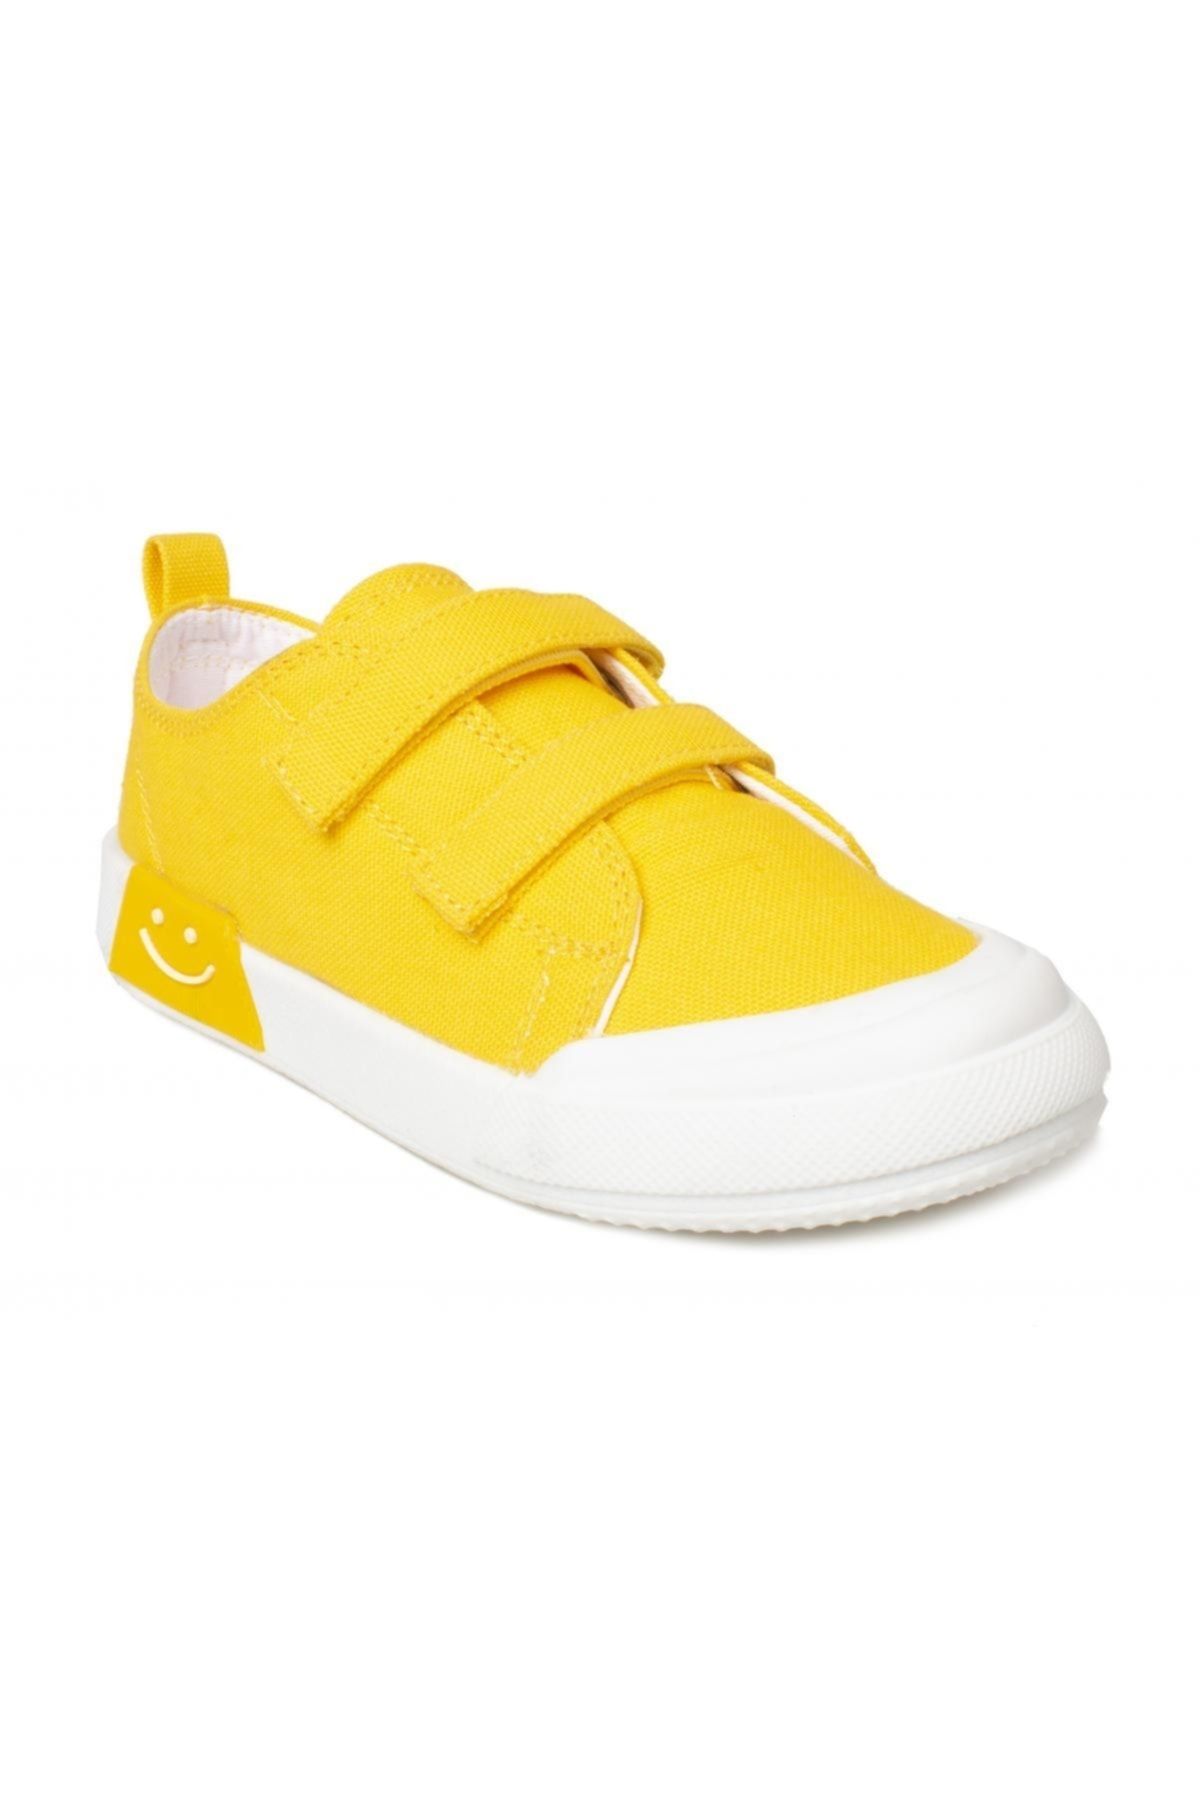 Vicco 925.p22y251 Luffy Patik Işıklı Sarı Çocuk Spor Ayakkabı